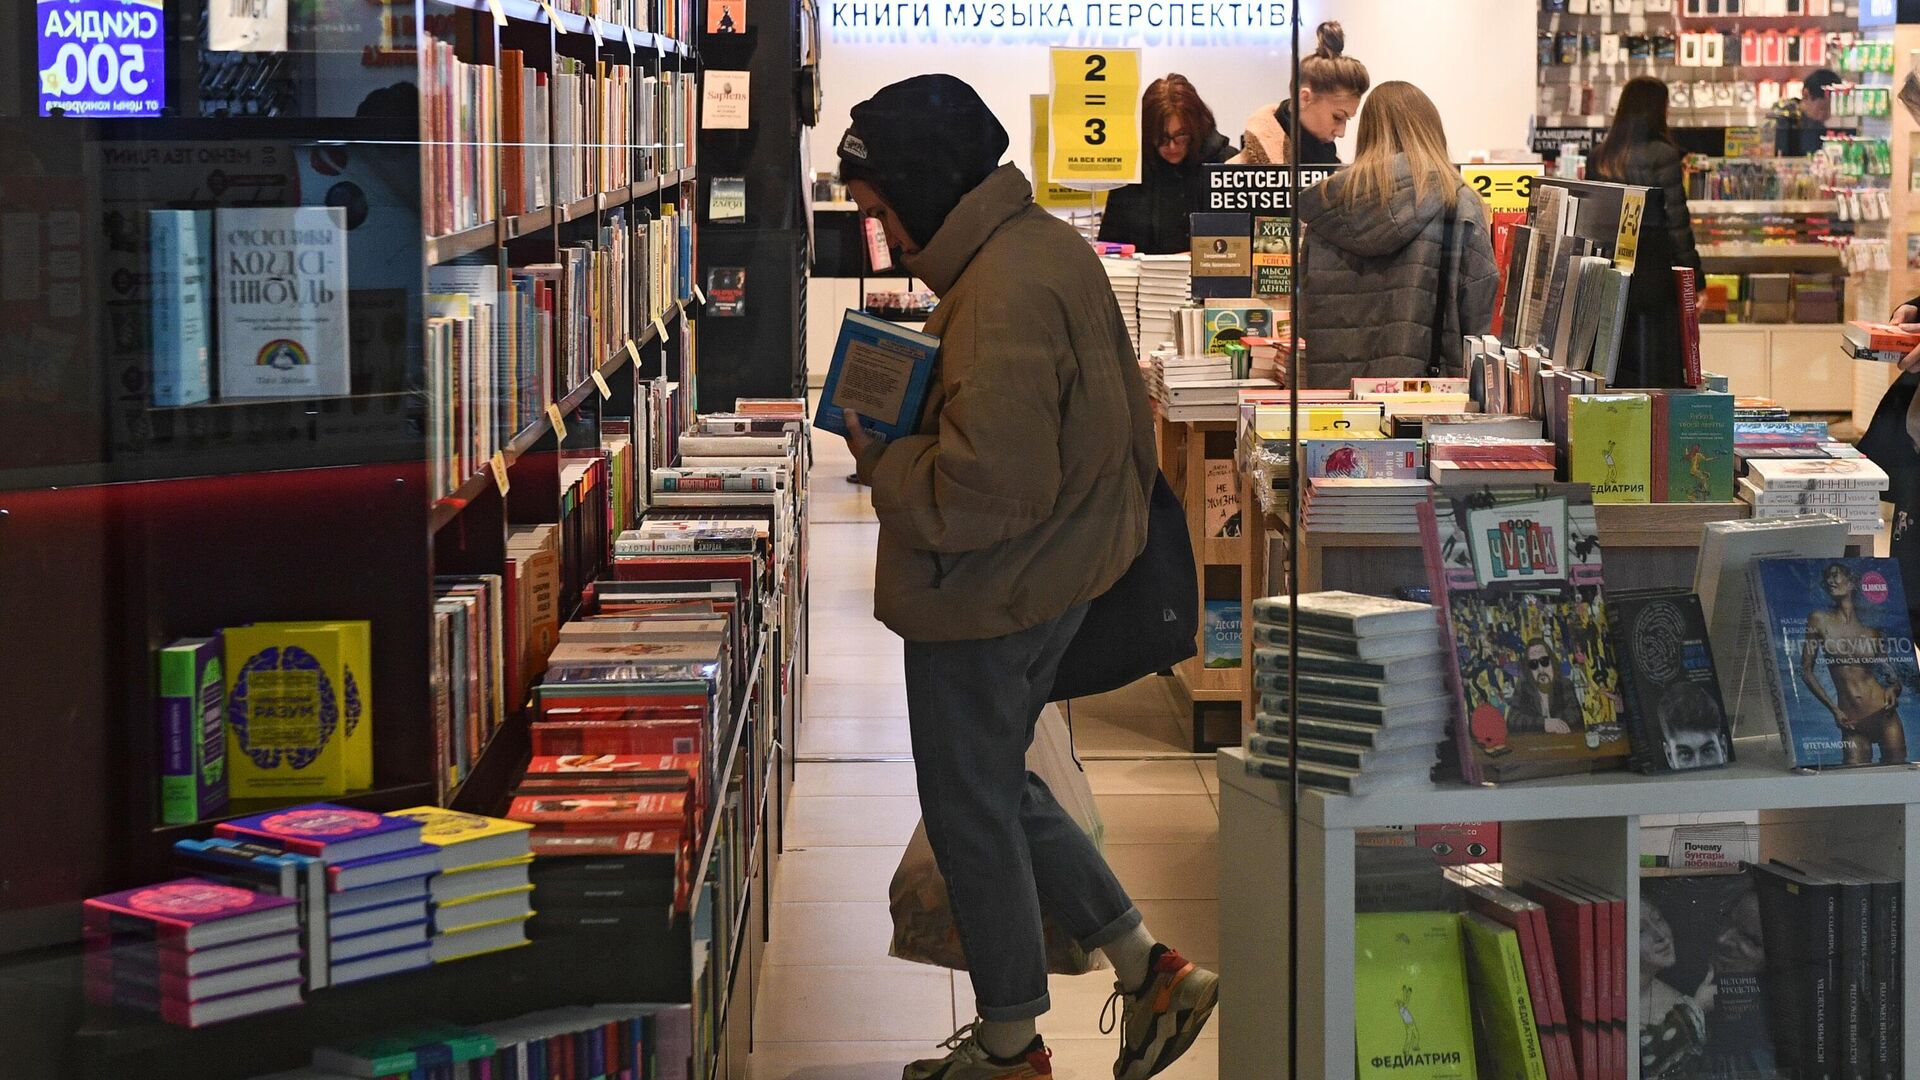 Риа книги. Магазин книг. Нон фикшн. Иноагенты в книжных магазинах. Оборачивают книги в книжных магазинах.